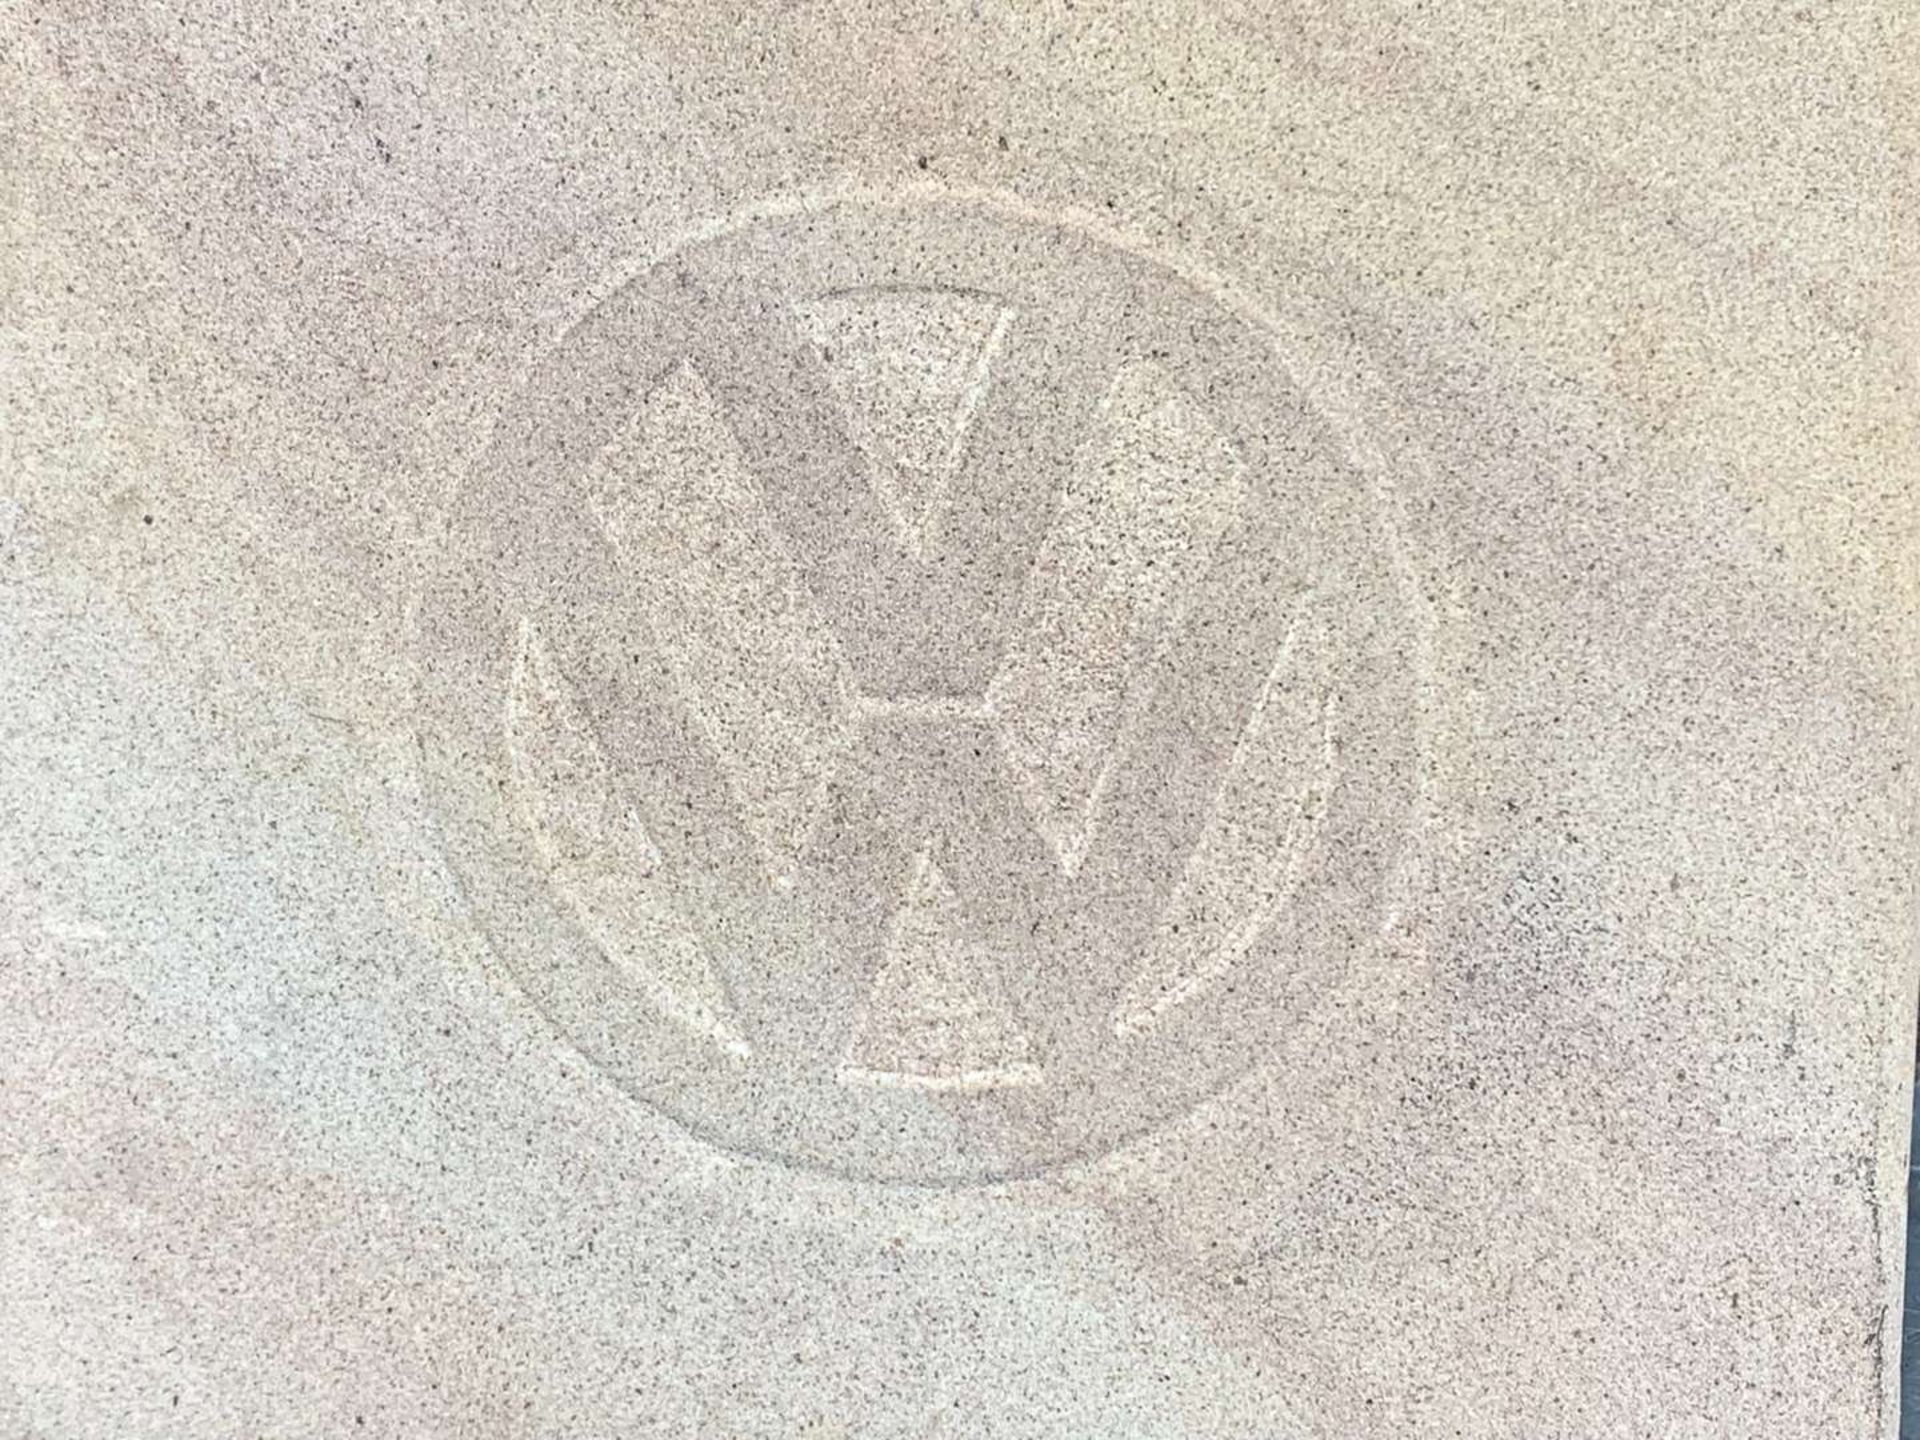 Carved Stone VW Emblem Tile - Image 2 of 3